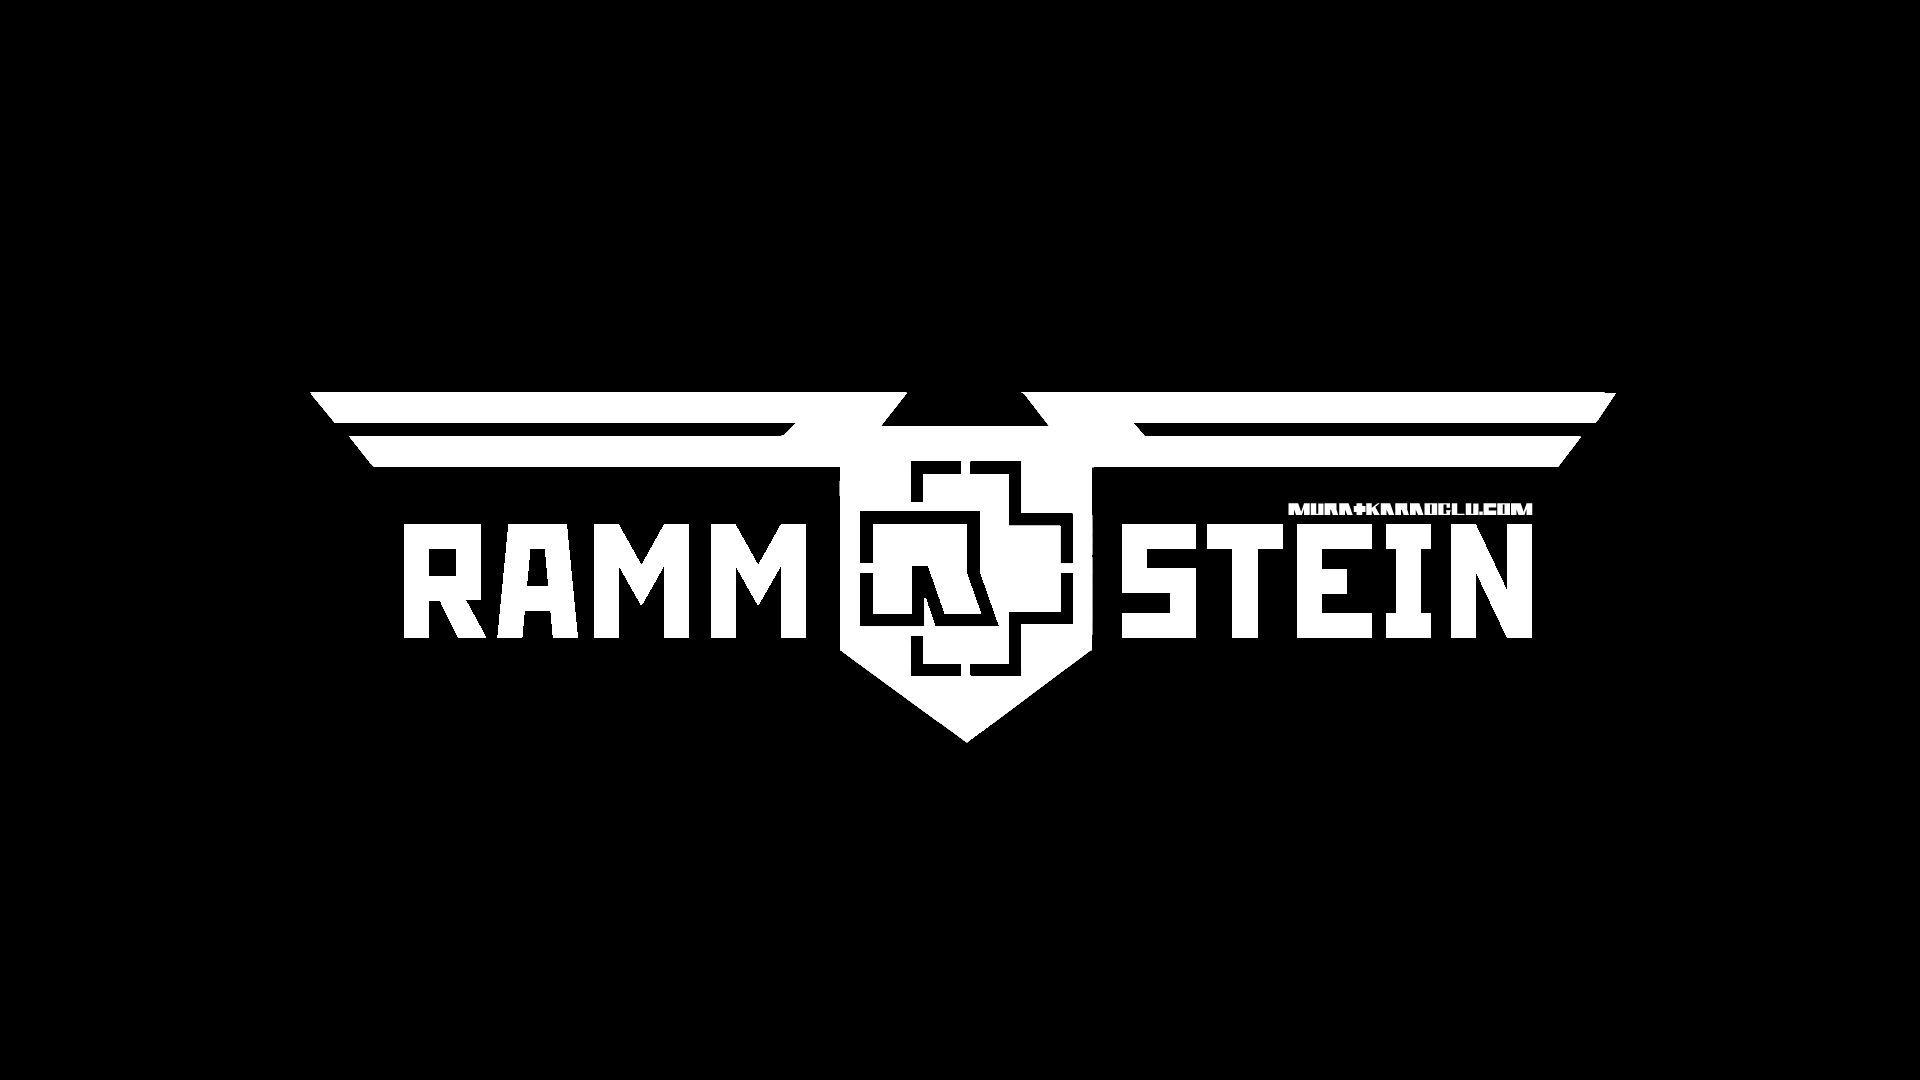 Rammstein Logo - Rammstein Logo Wallpapers HD - Wallpaper Cave